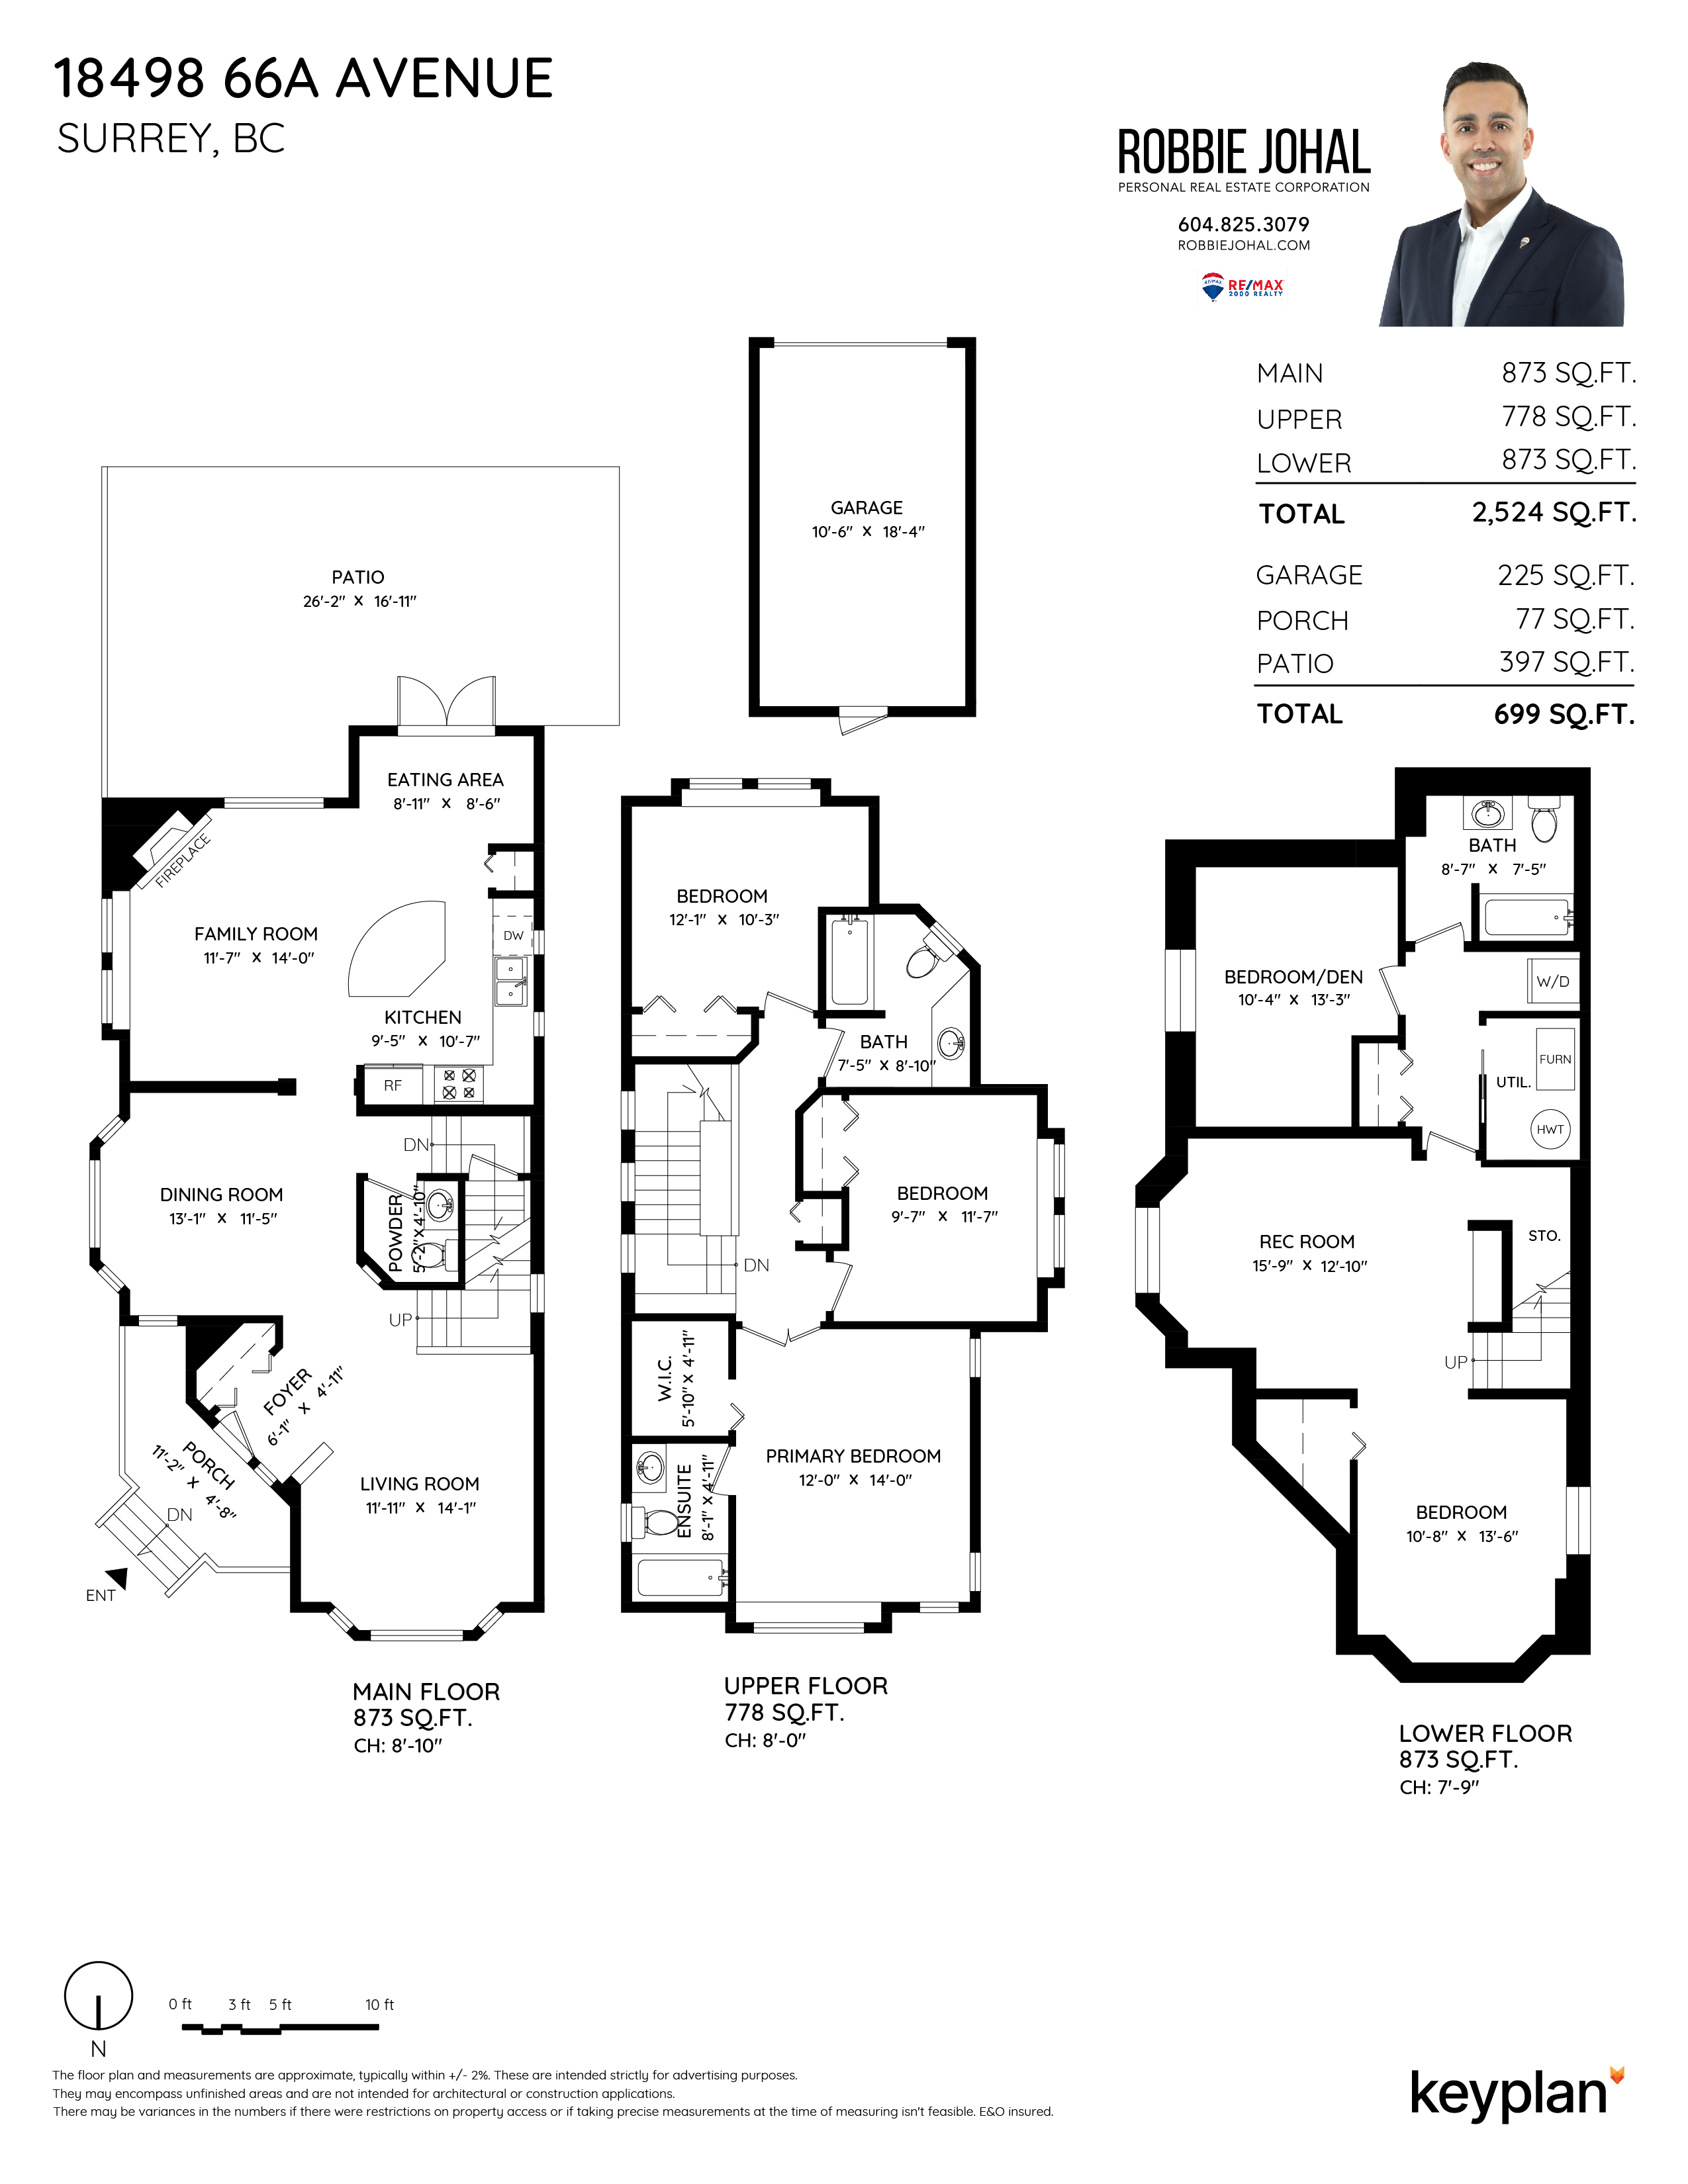 Robbie Johal - 18498 66A Avenue, Surrey, BC, Canada | Floor Plan 1